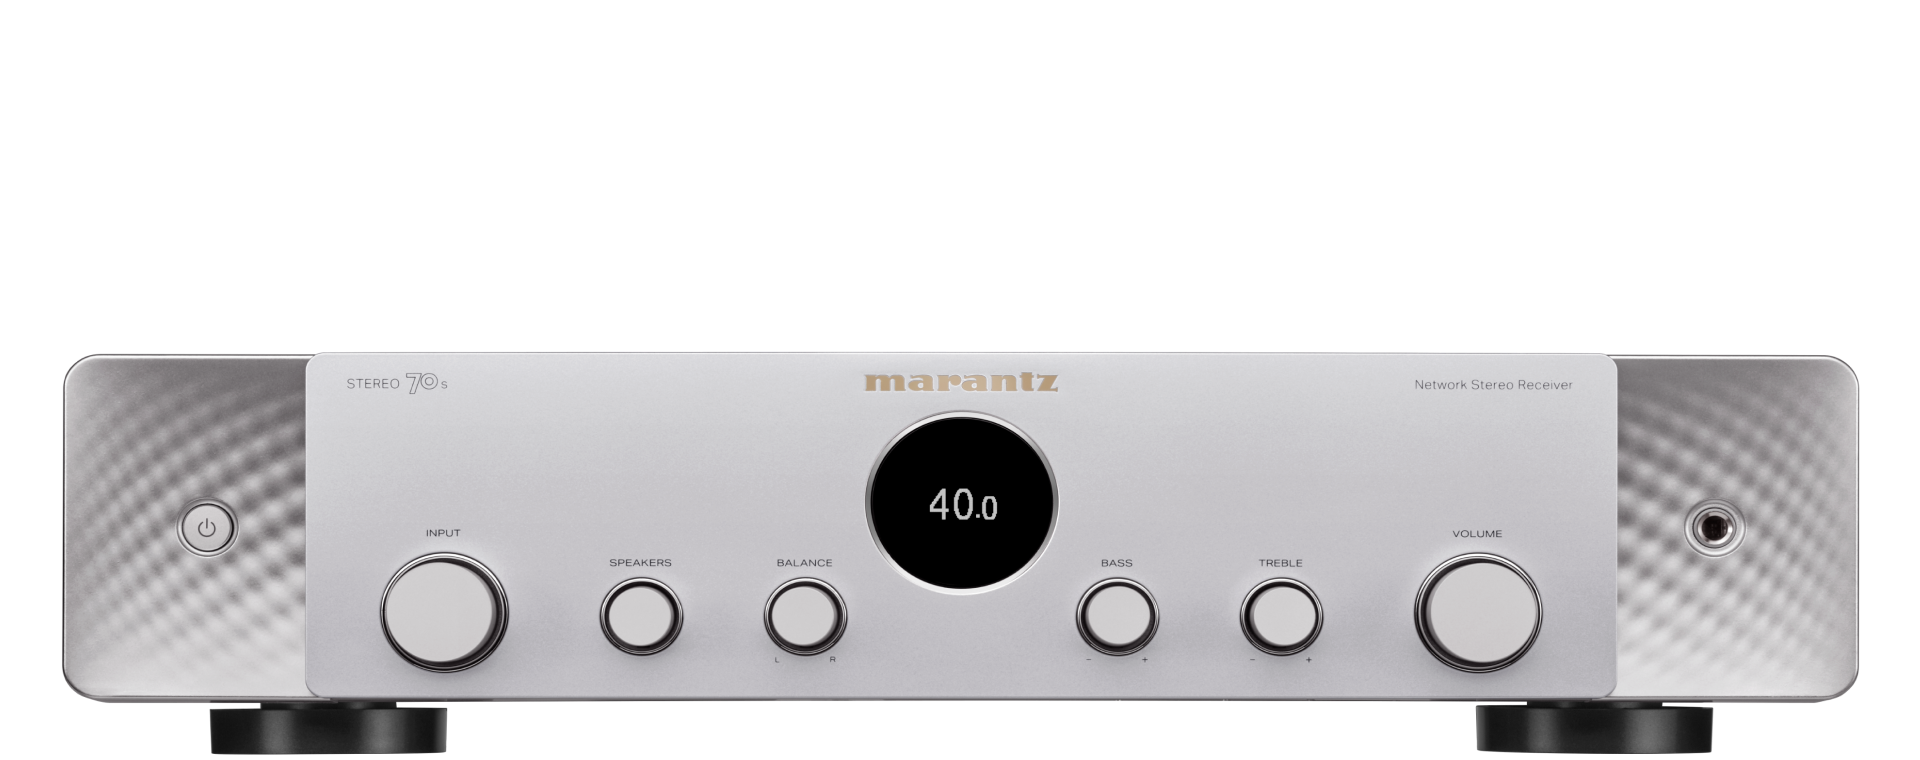 Marantz Stereo 70s AV stereo amplifier